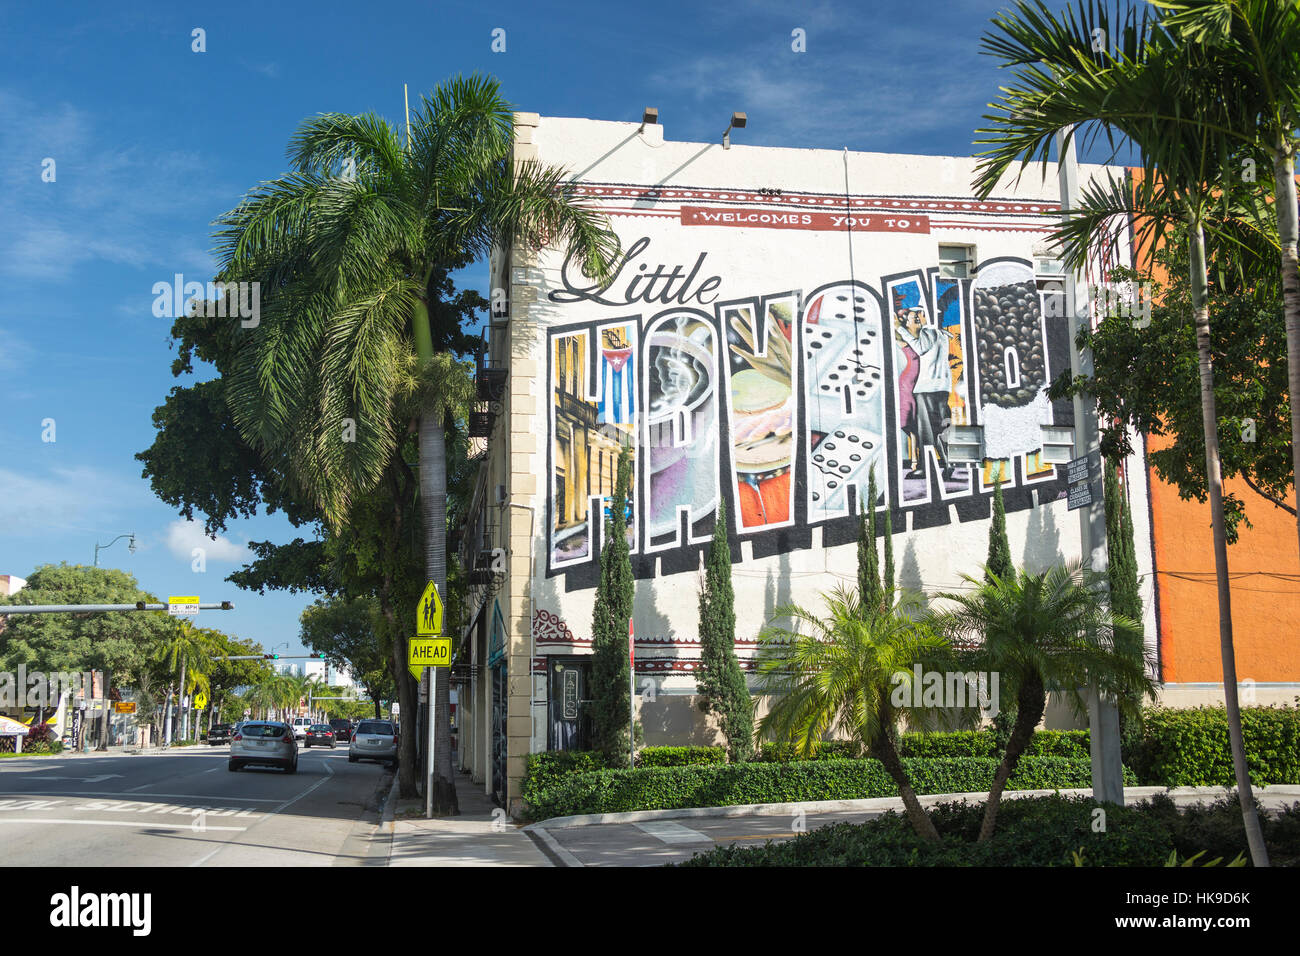 BIENVENUE À LITTLE HAVANA PANNEAU MURAL (©UNATTRIBUTED) HUITIÈME RUE QUARTIER LITTLE HAVANA MIAMI FLORIDA Banque D'Images